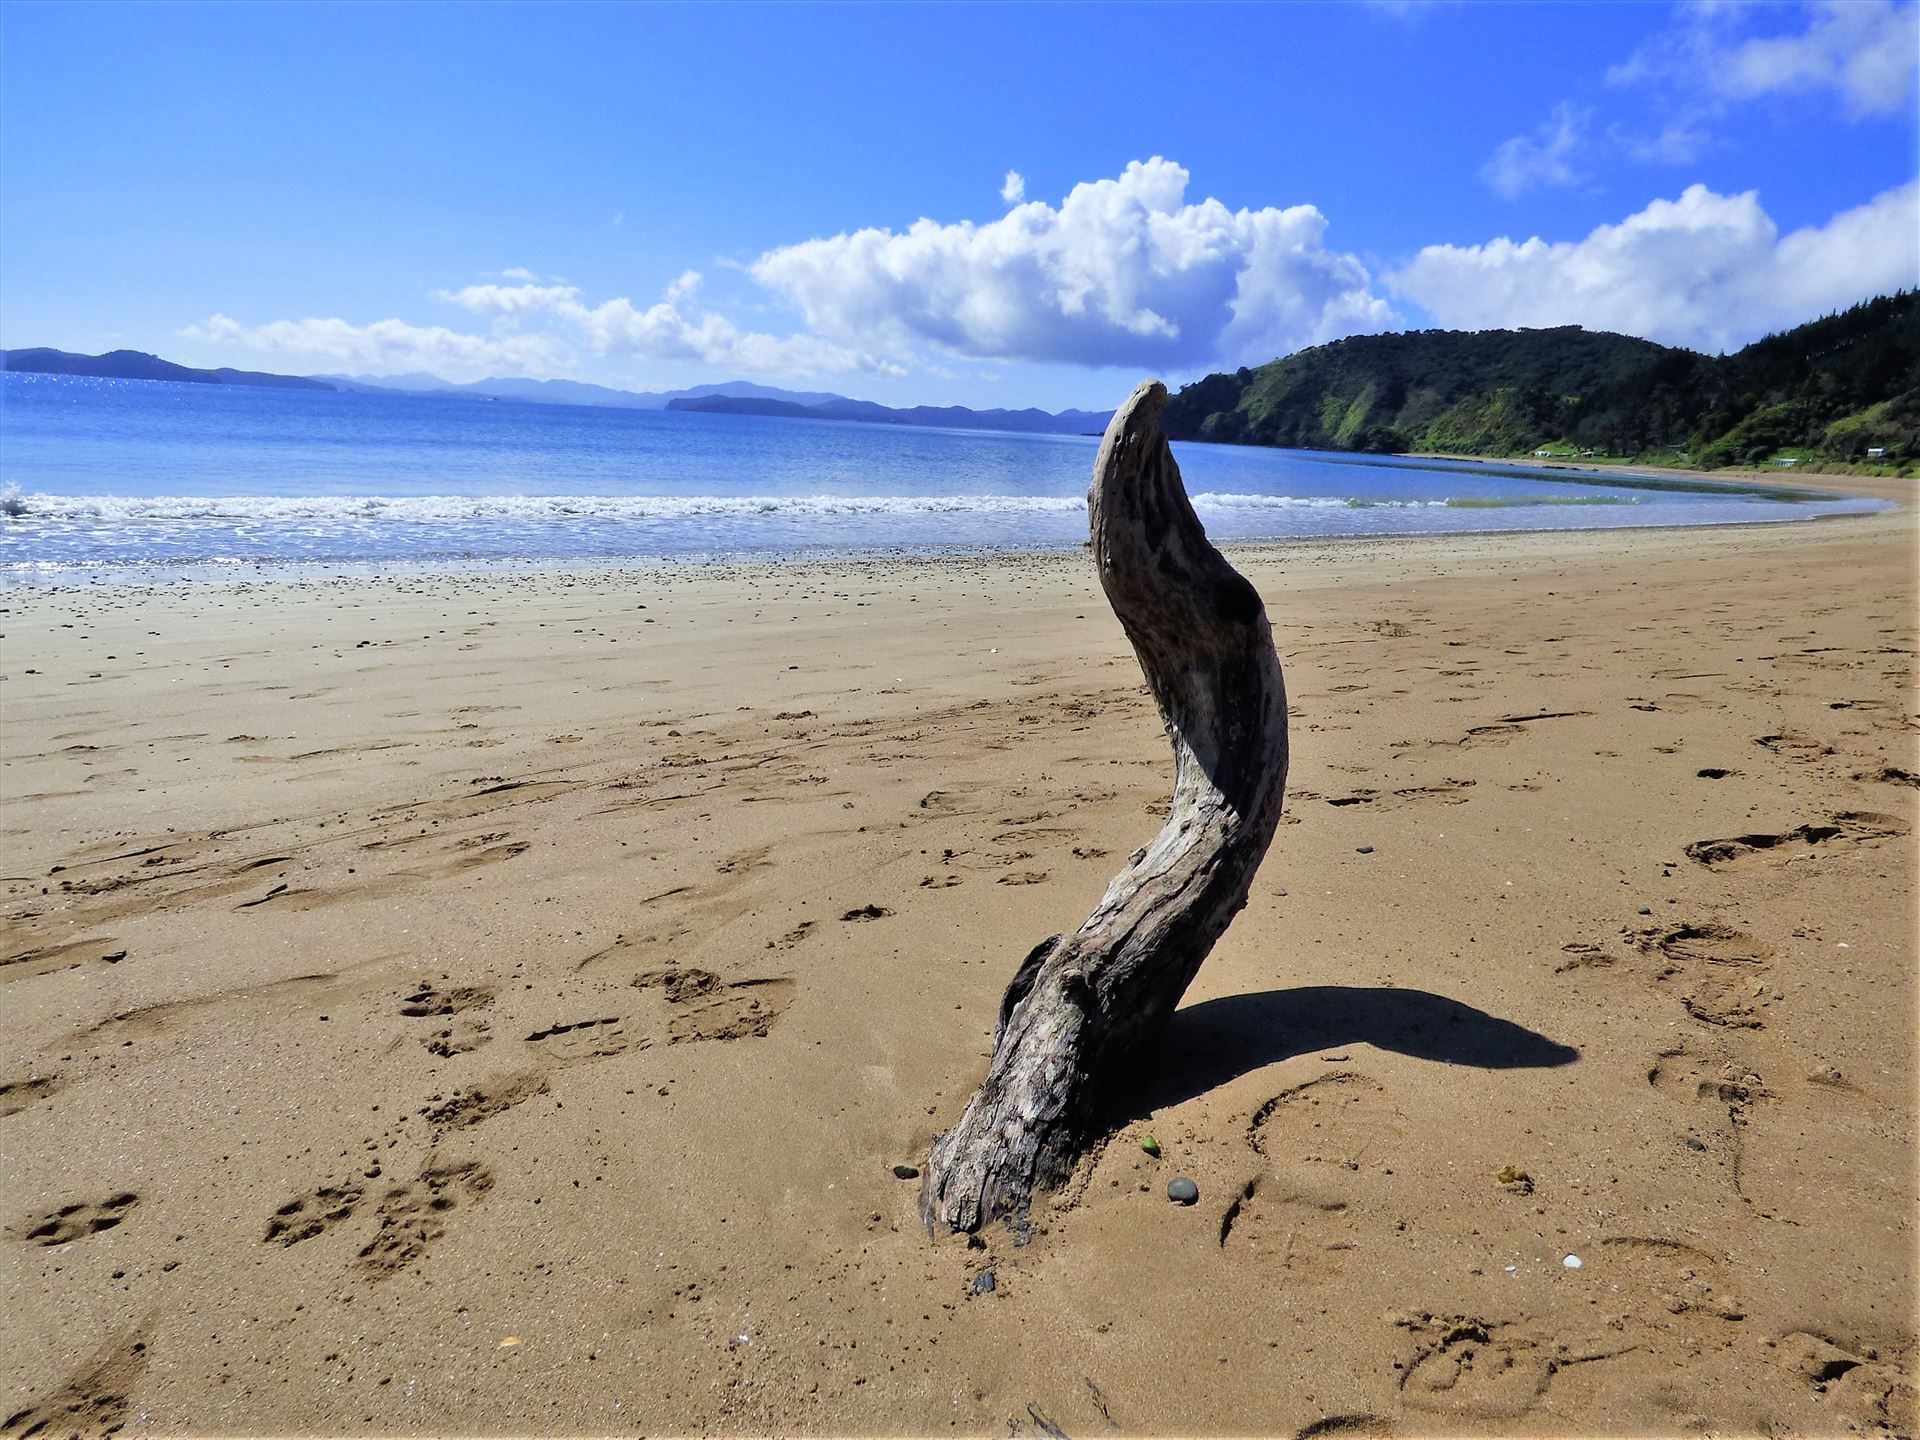 Beach and driftwood sculpture